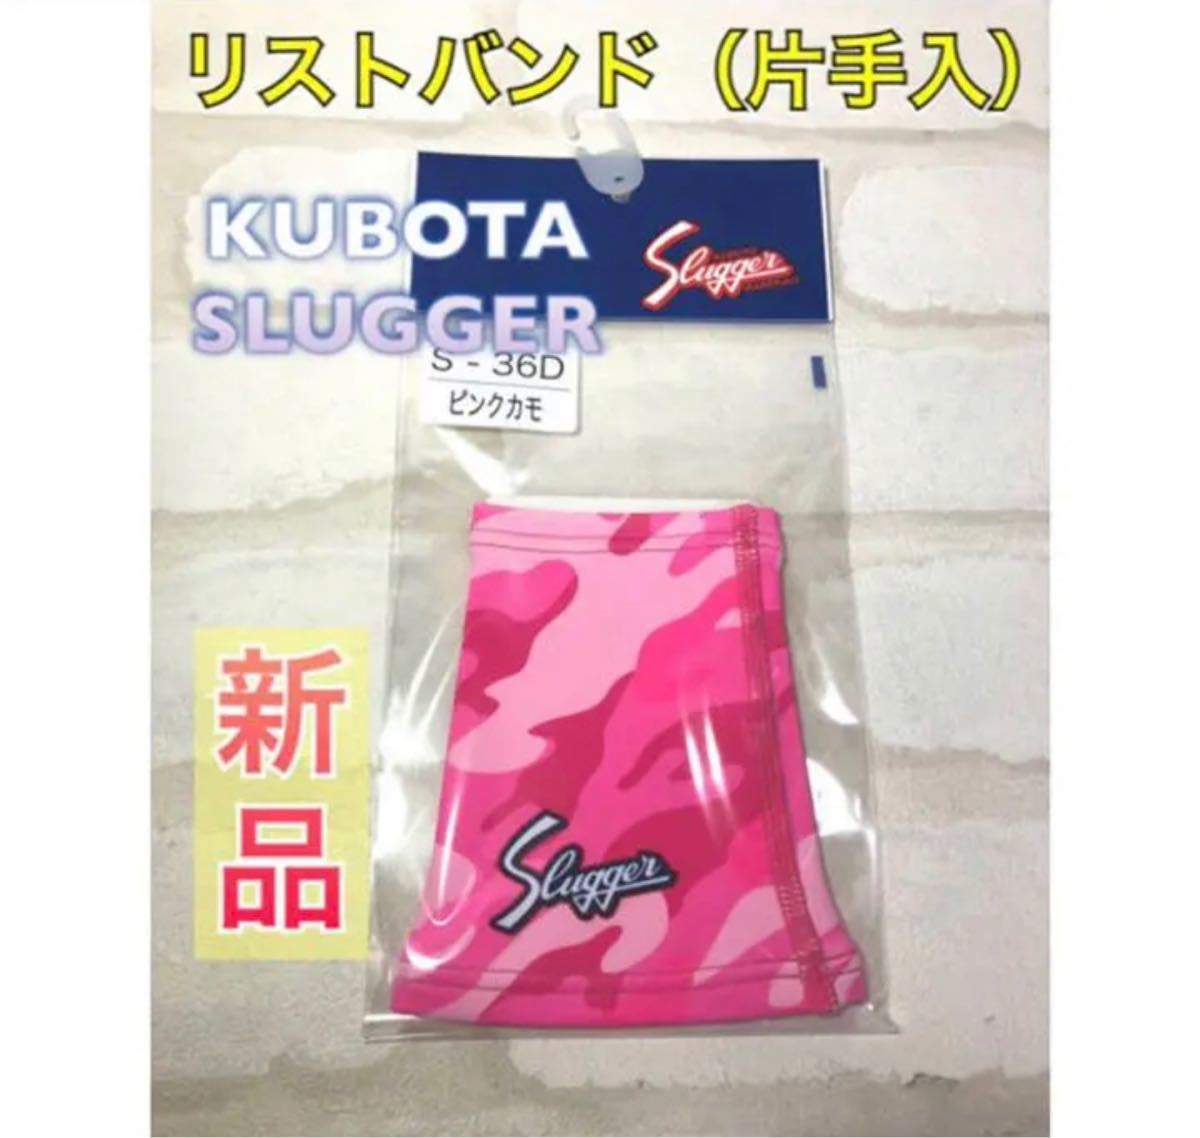 久保田スラッガー 限定リストバンド 2007年金本モデル ピンク